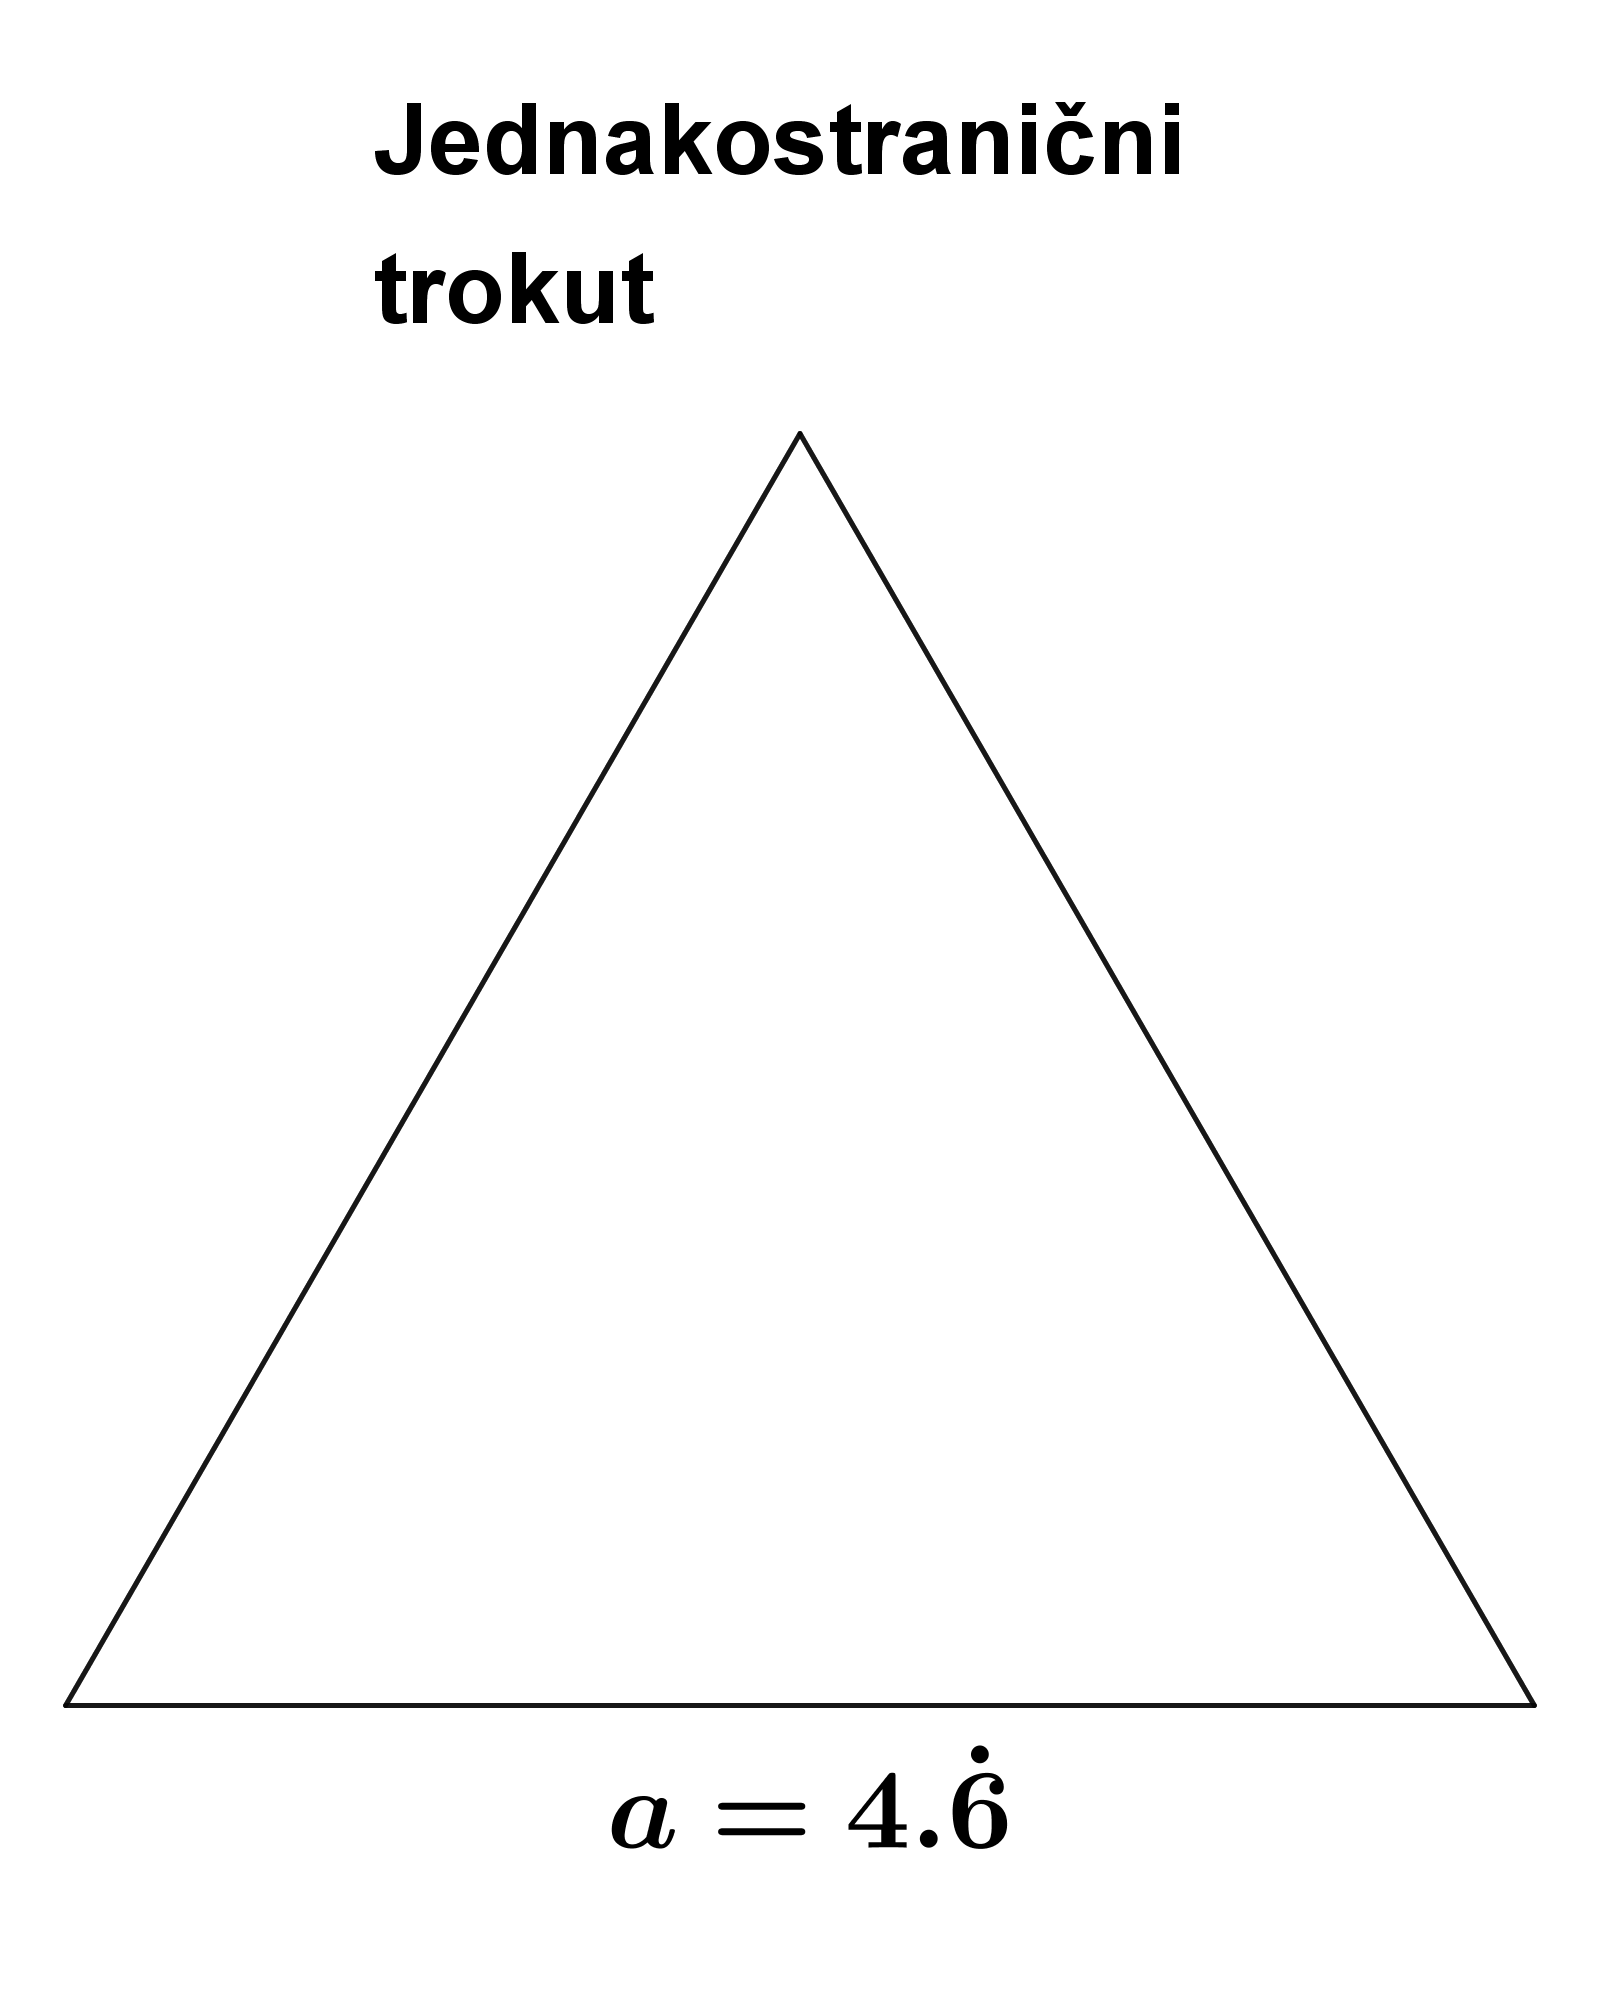 Na slici je jednakostranični trokut stranice 14/3